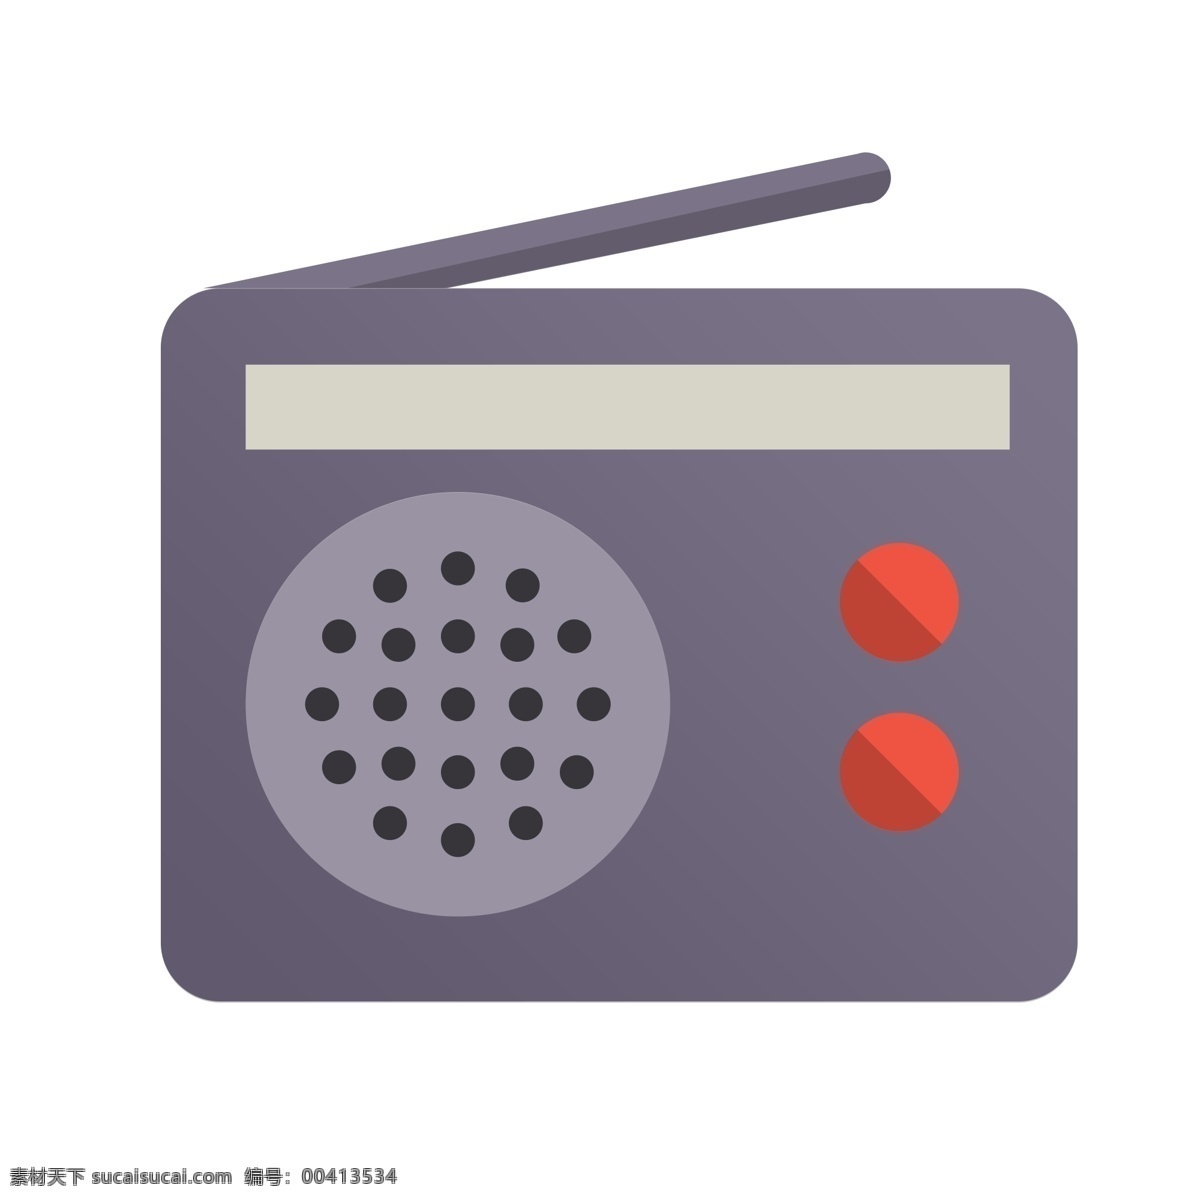 扁平化收音机 收音机 扁平化ui ui图标 手机图标 界面ui 网页ui h5图标